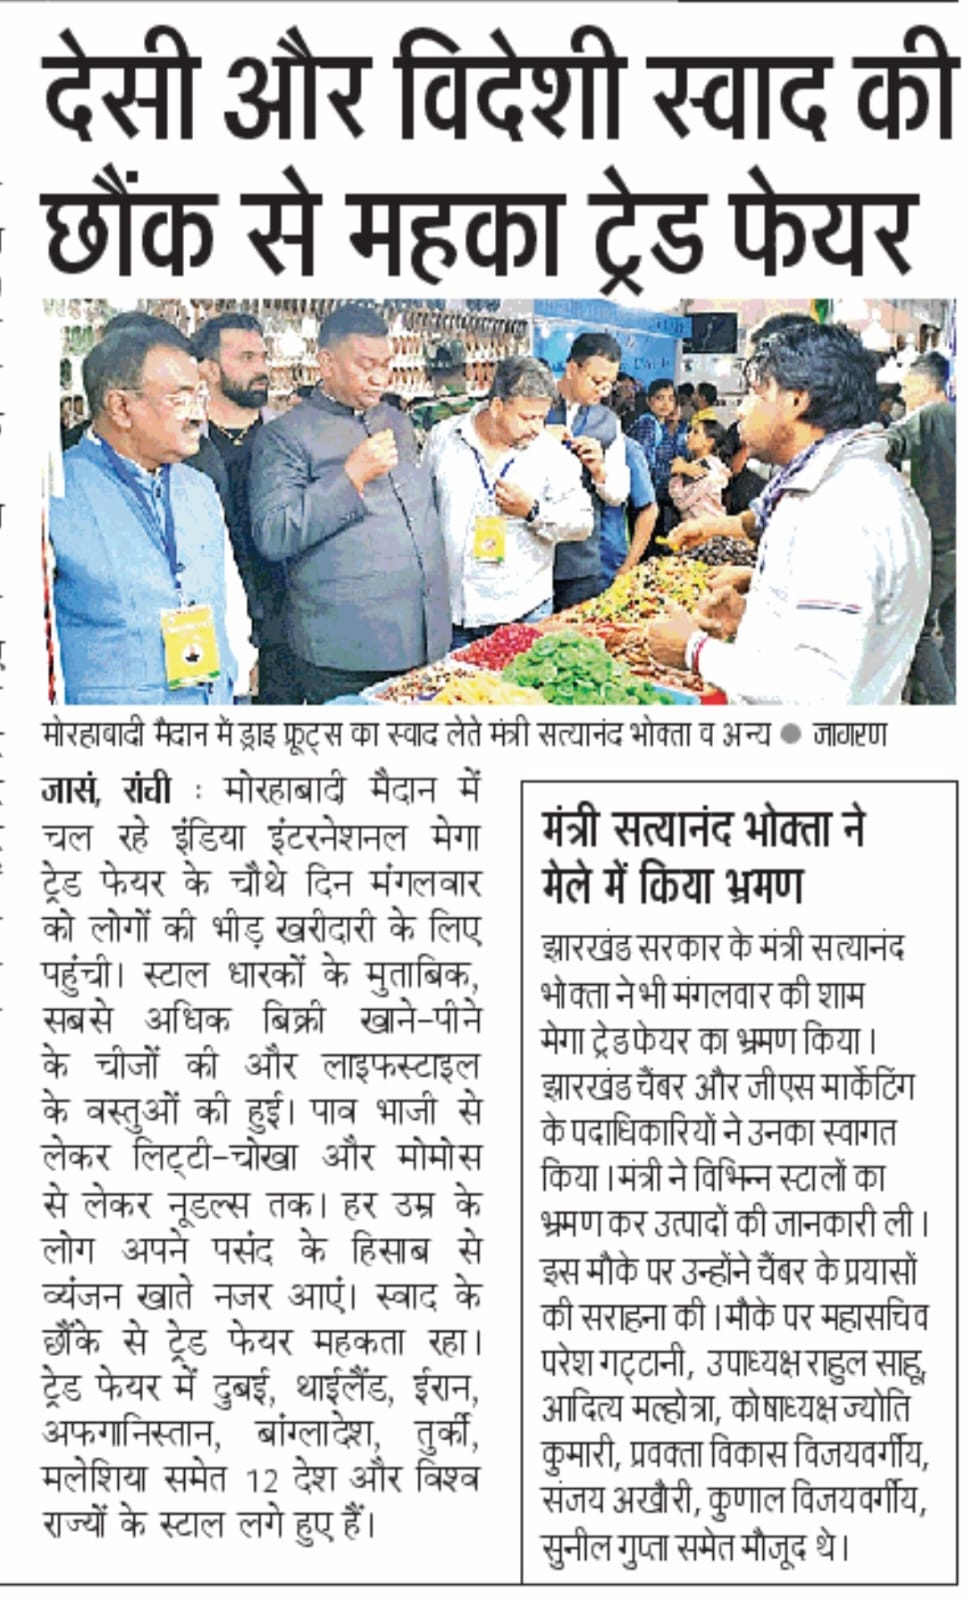 FJCCI members visted diferent stalls at Inida International Mega Trade Fair at Morabadi Ground, Ranchi along with Shri Satyanand Bhokta, Hon'ble Minister, GOJ.